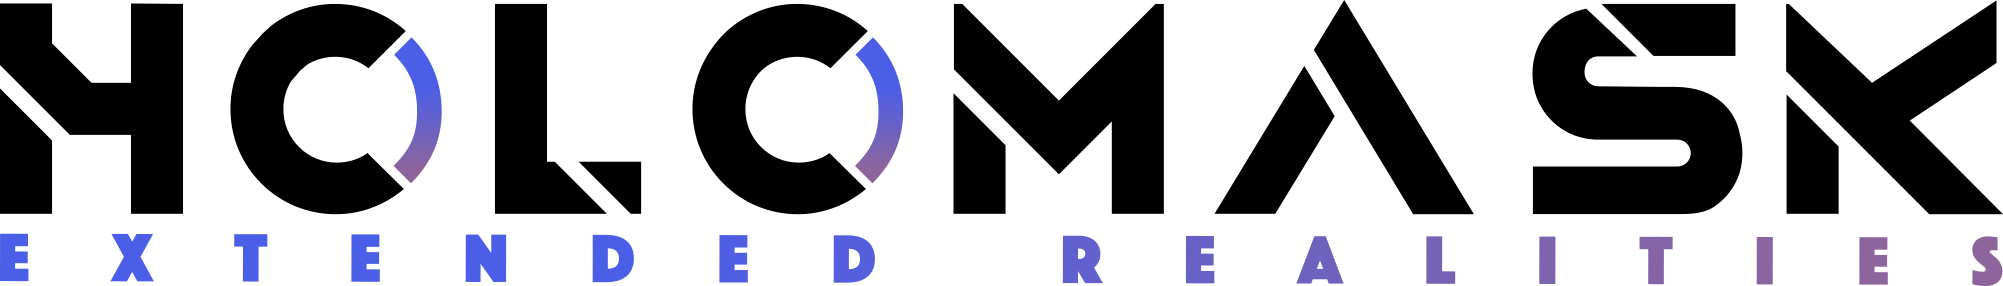 holomask logo